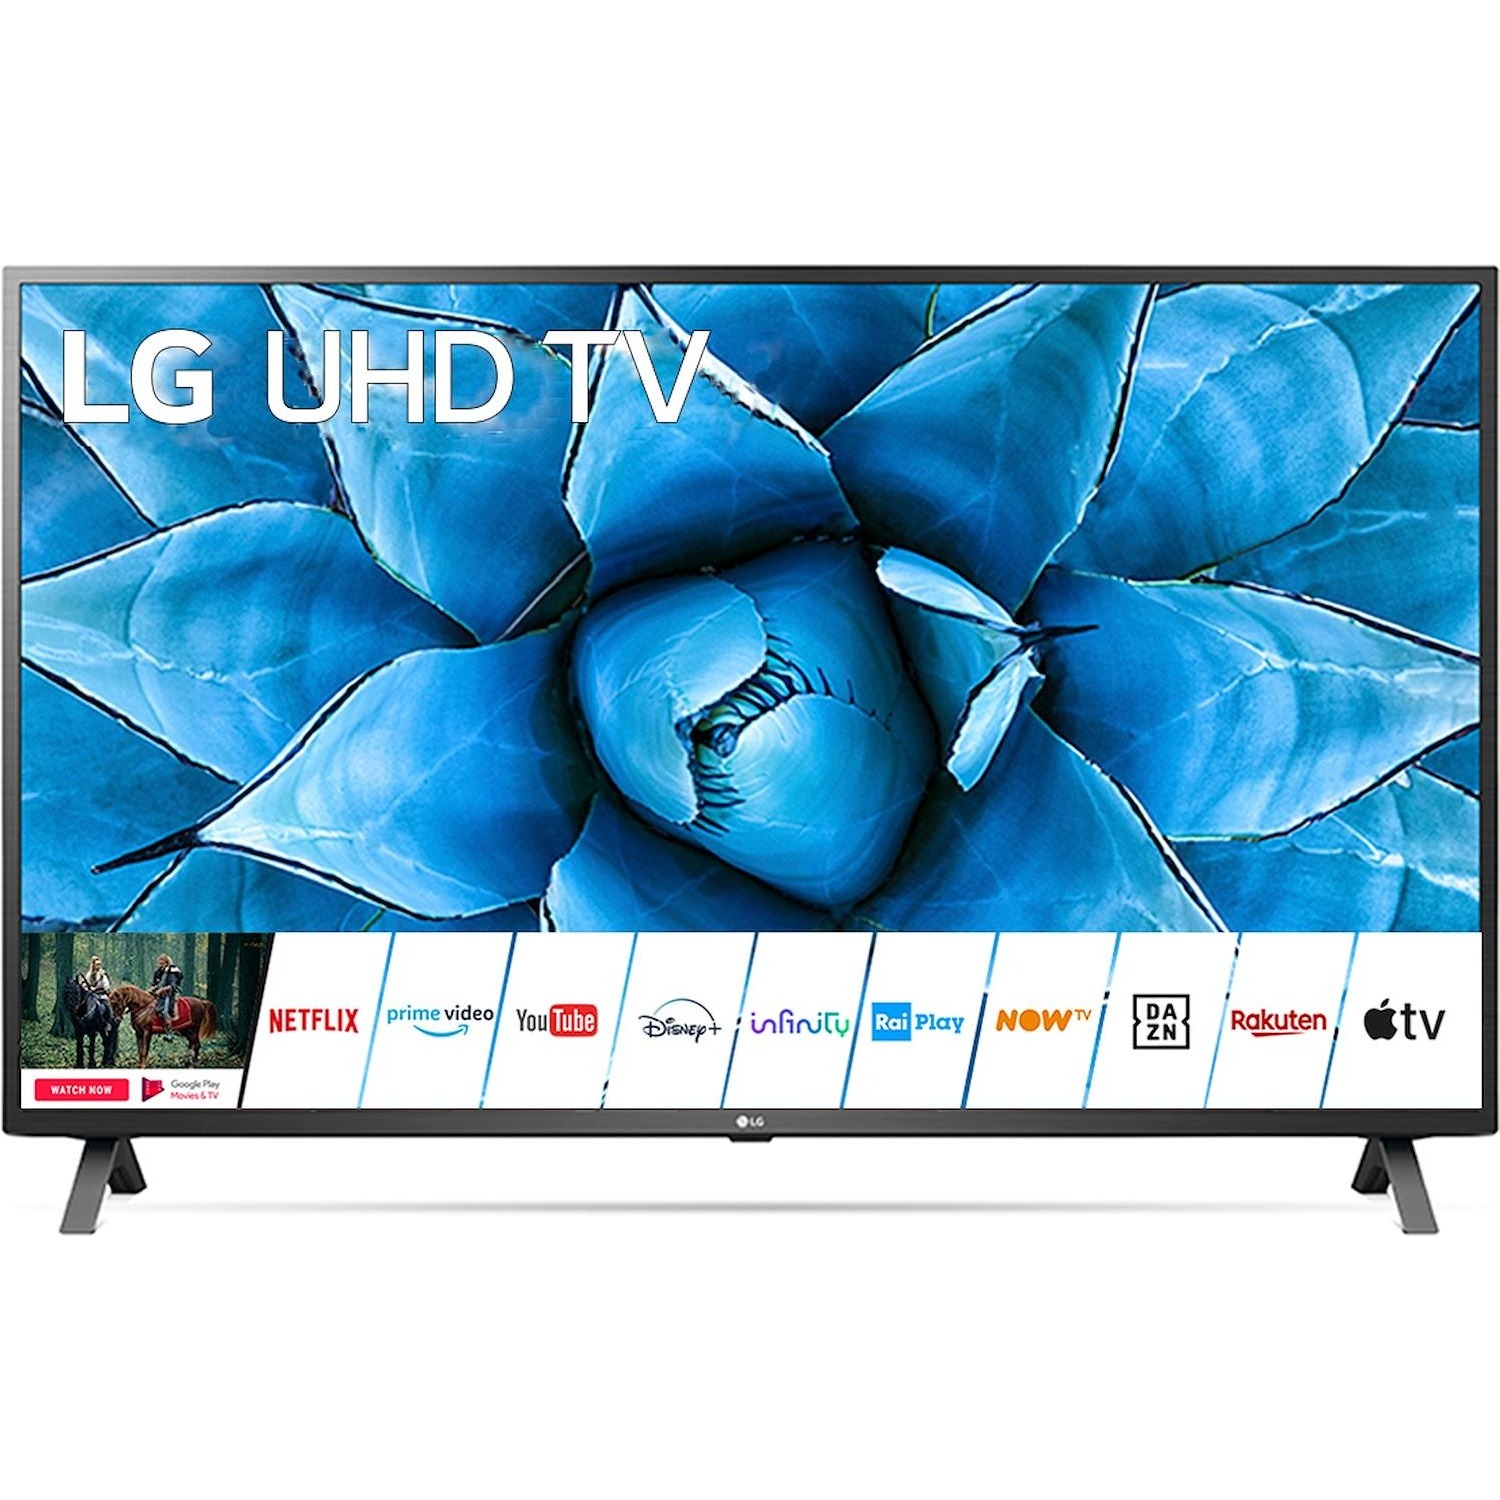 Immagine per TV LED Smart 4K UHD LG 55UN73006 da DIMOStore